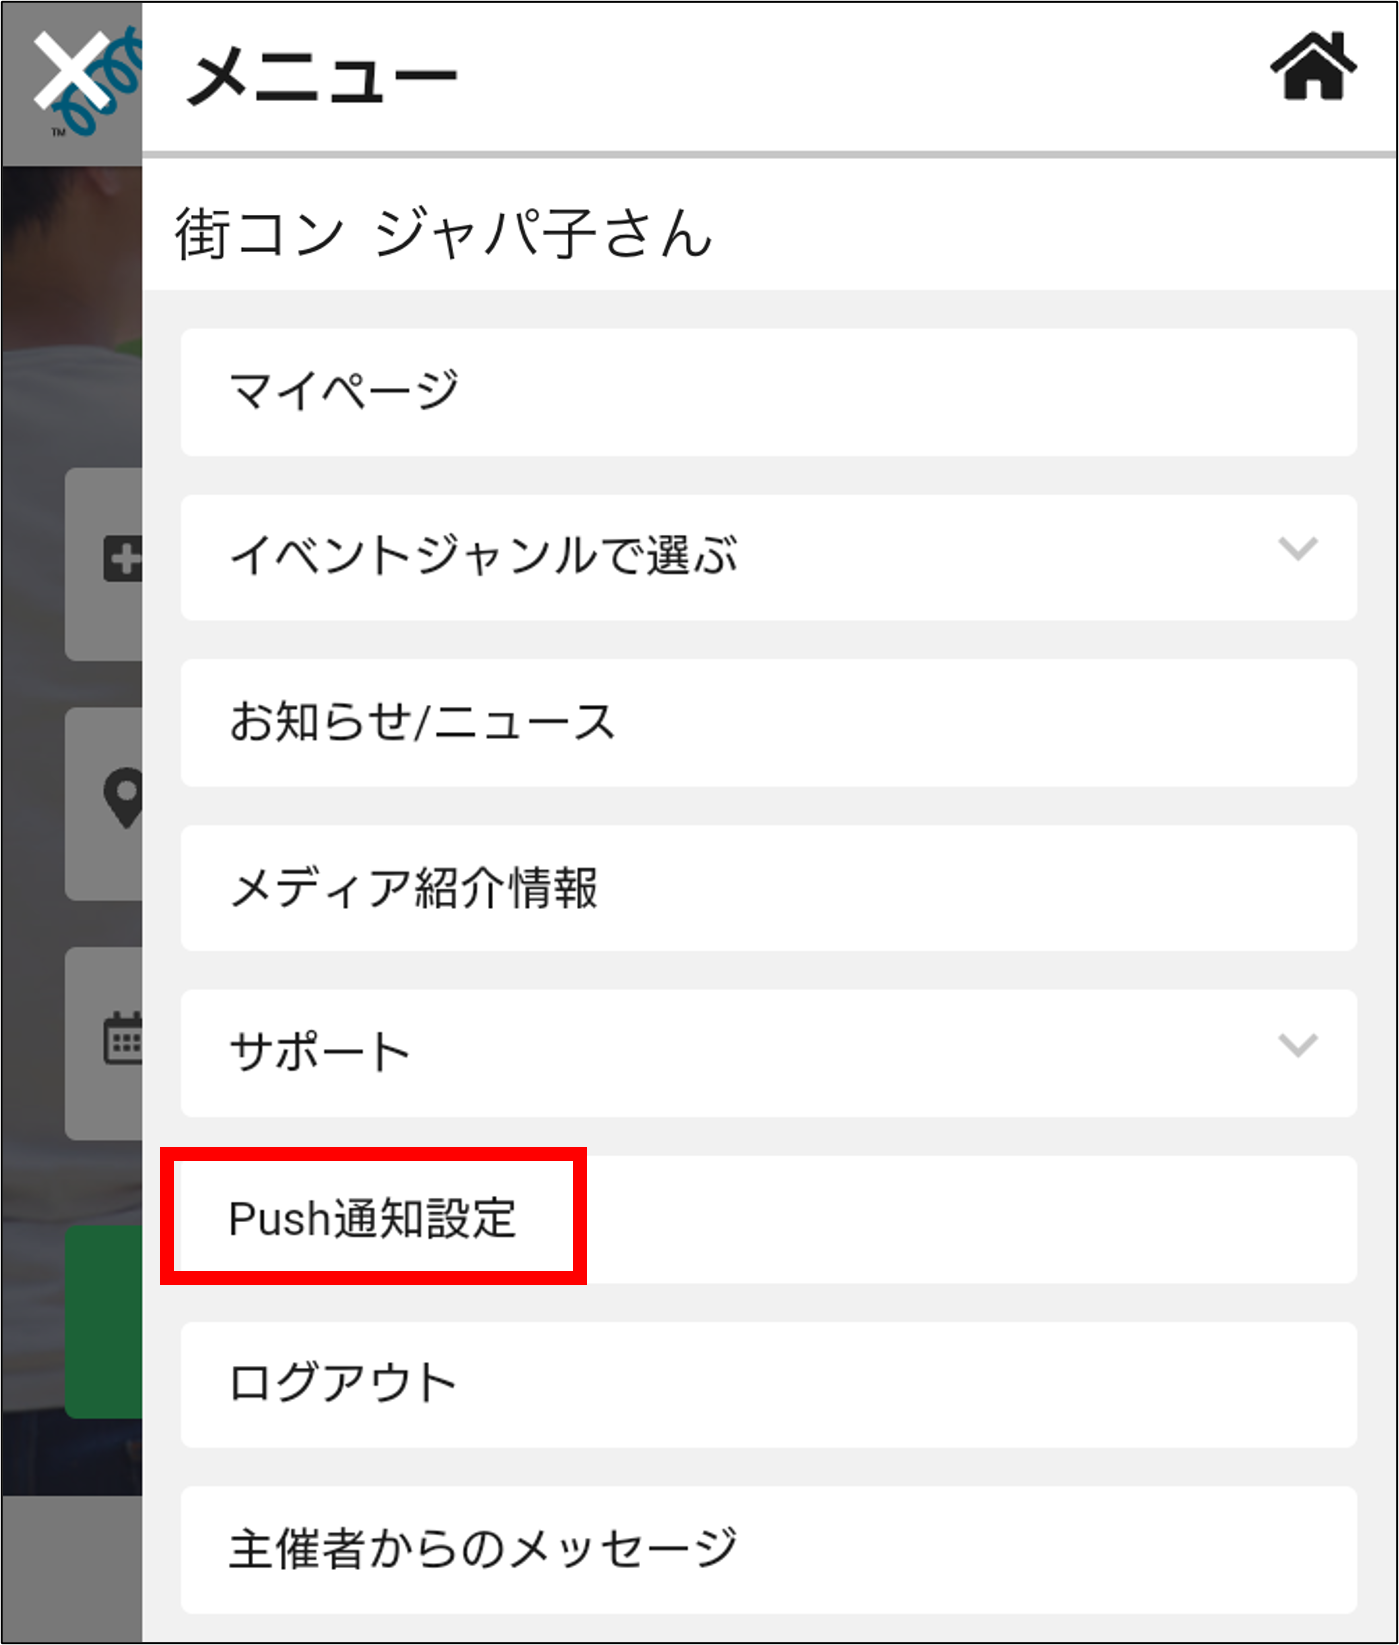 Push__.png